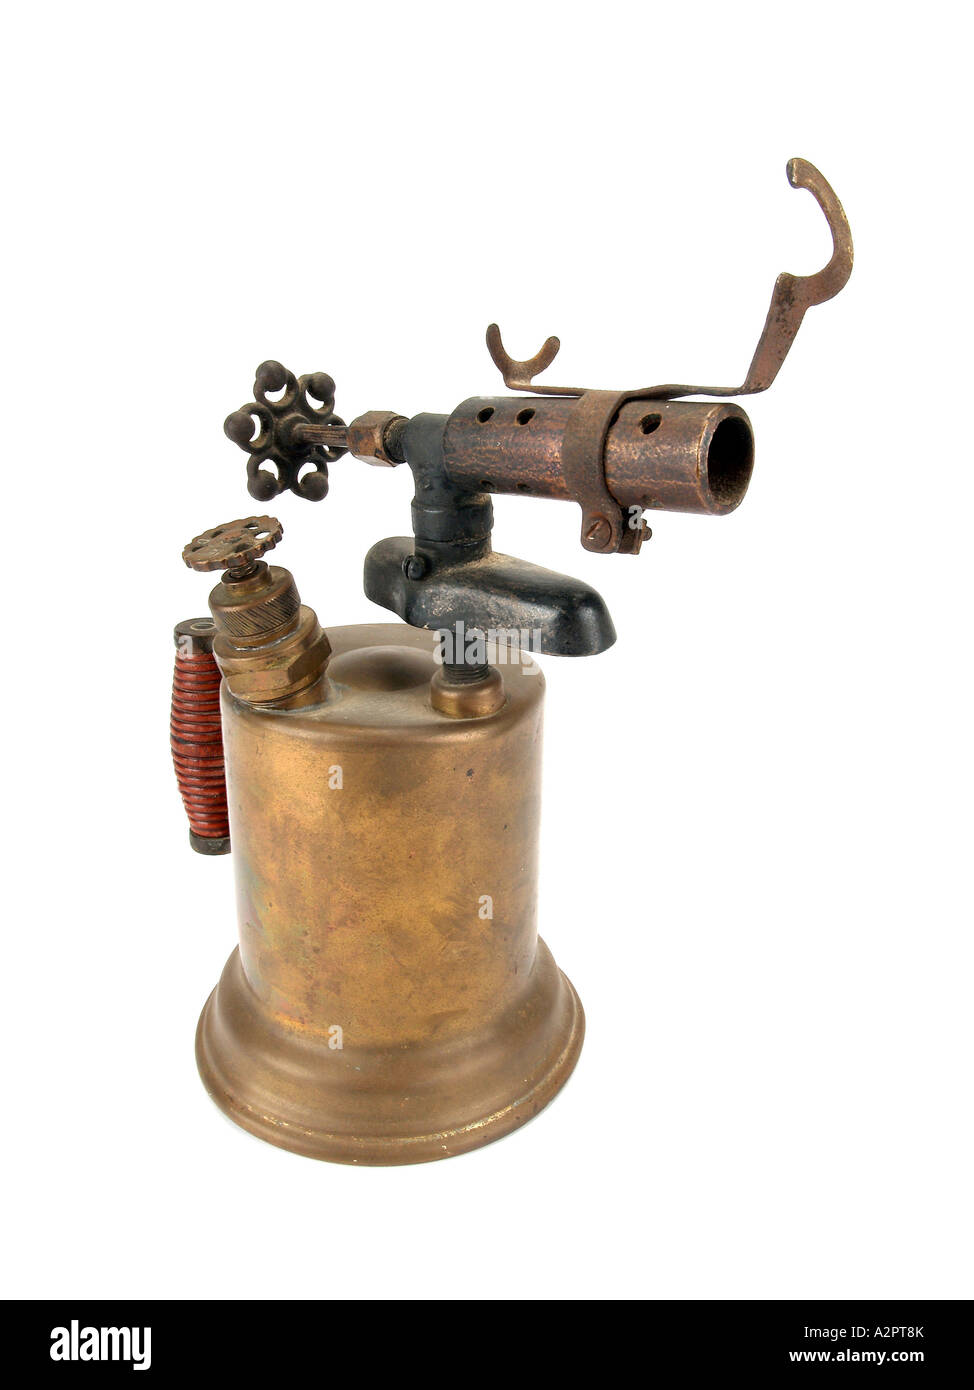 Old style bronze burner  on white background Stock Photo